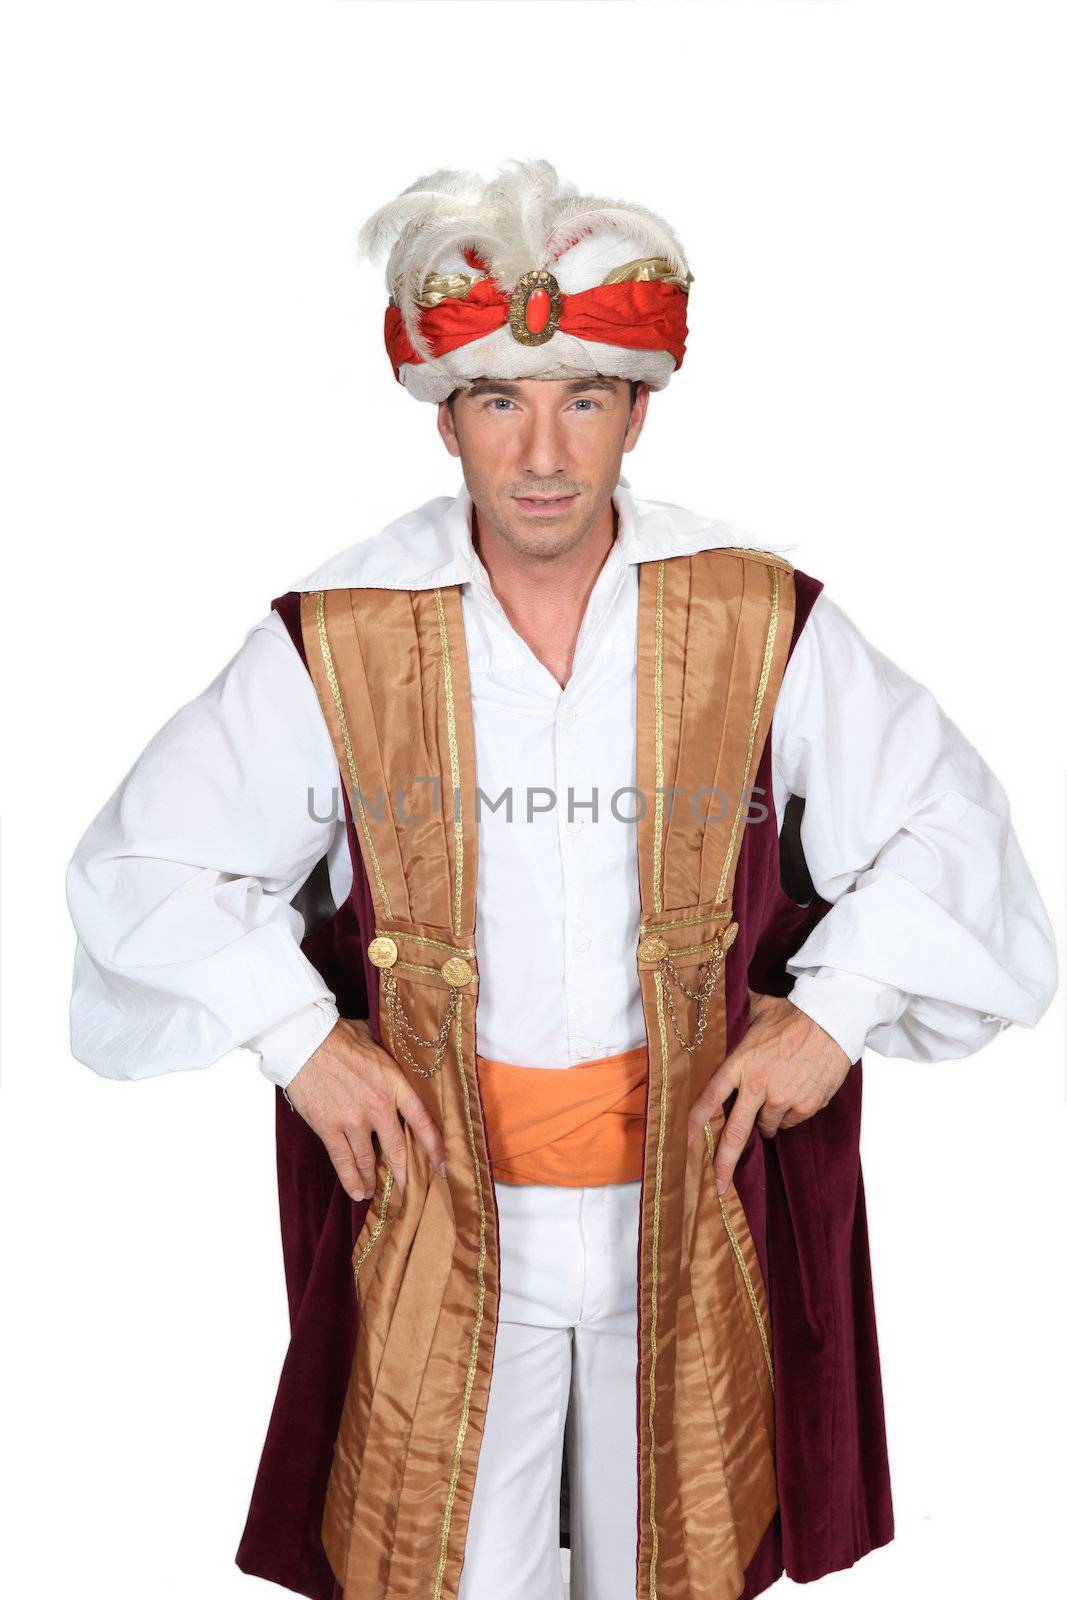 Man dressed in genie costume by phovoir